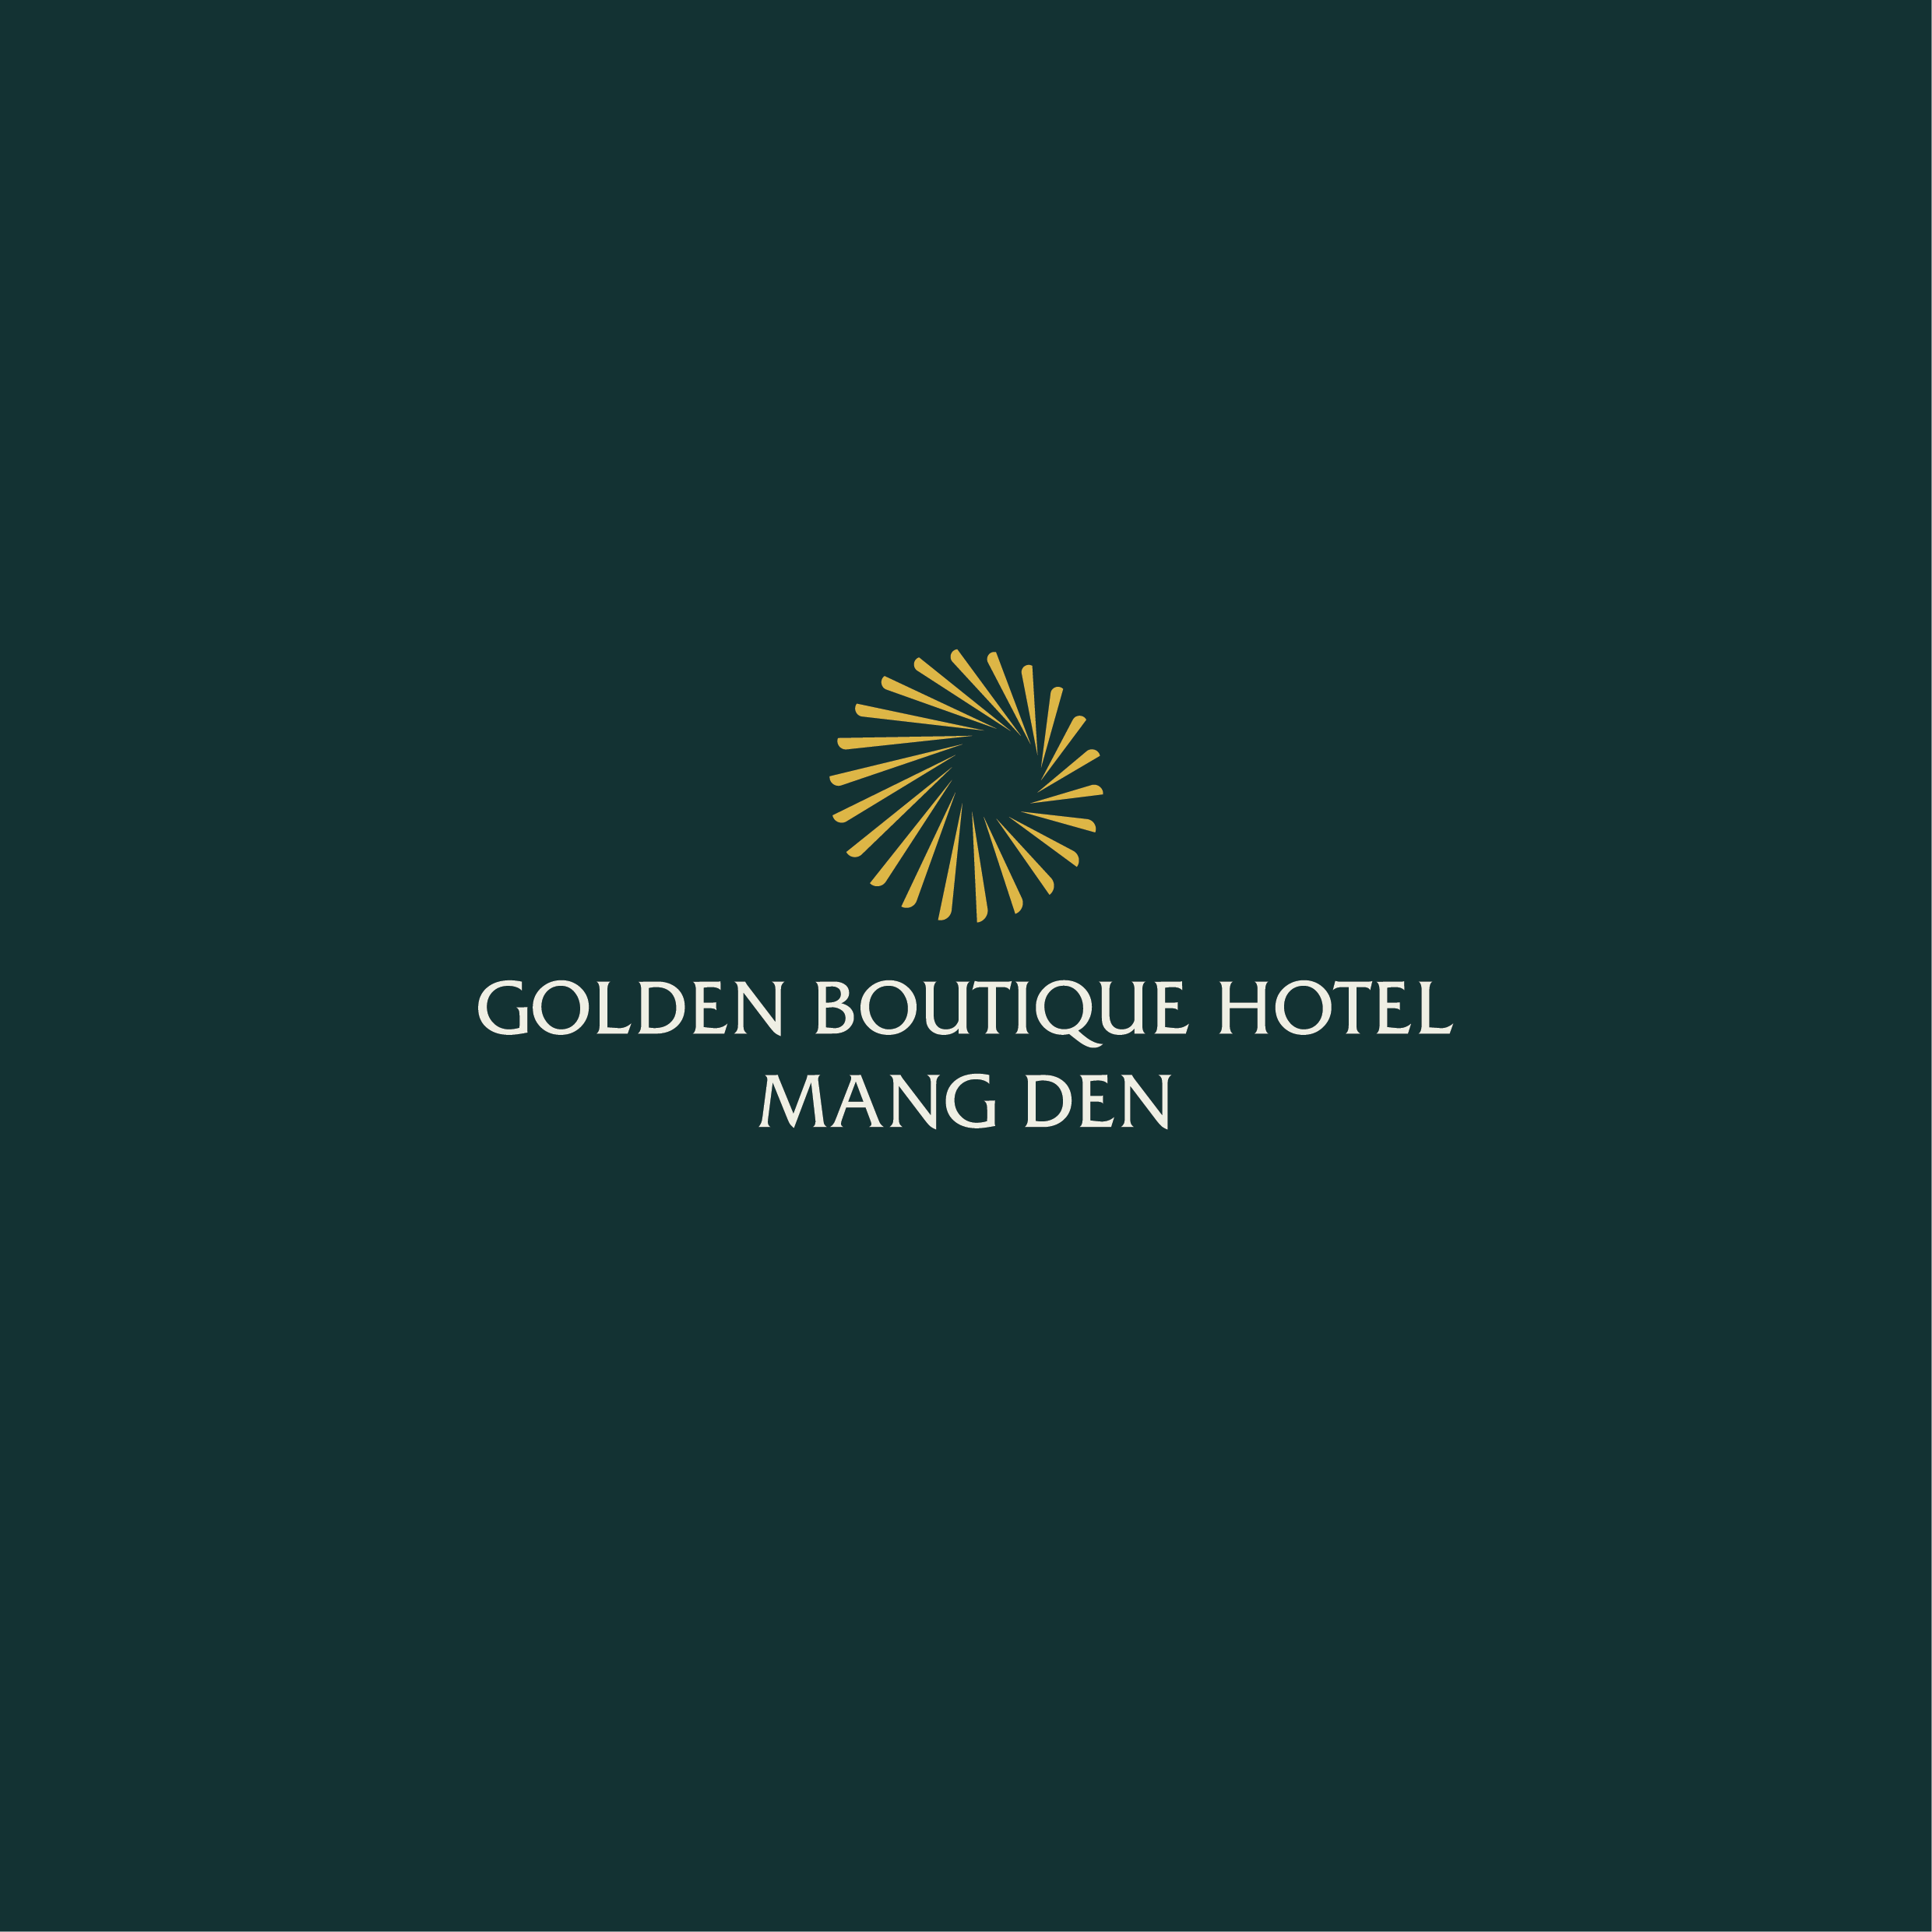 GOLDEN BOUTIQUE HOTEL MANG DEN